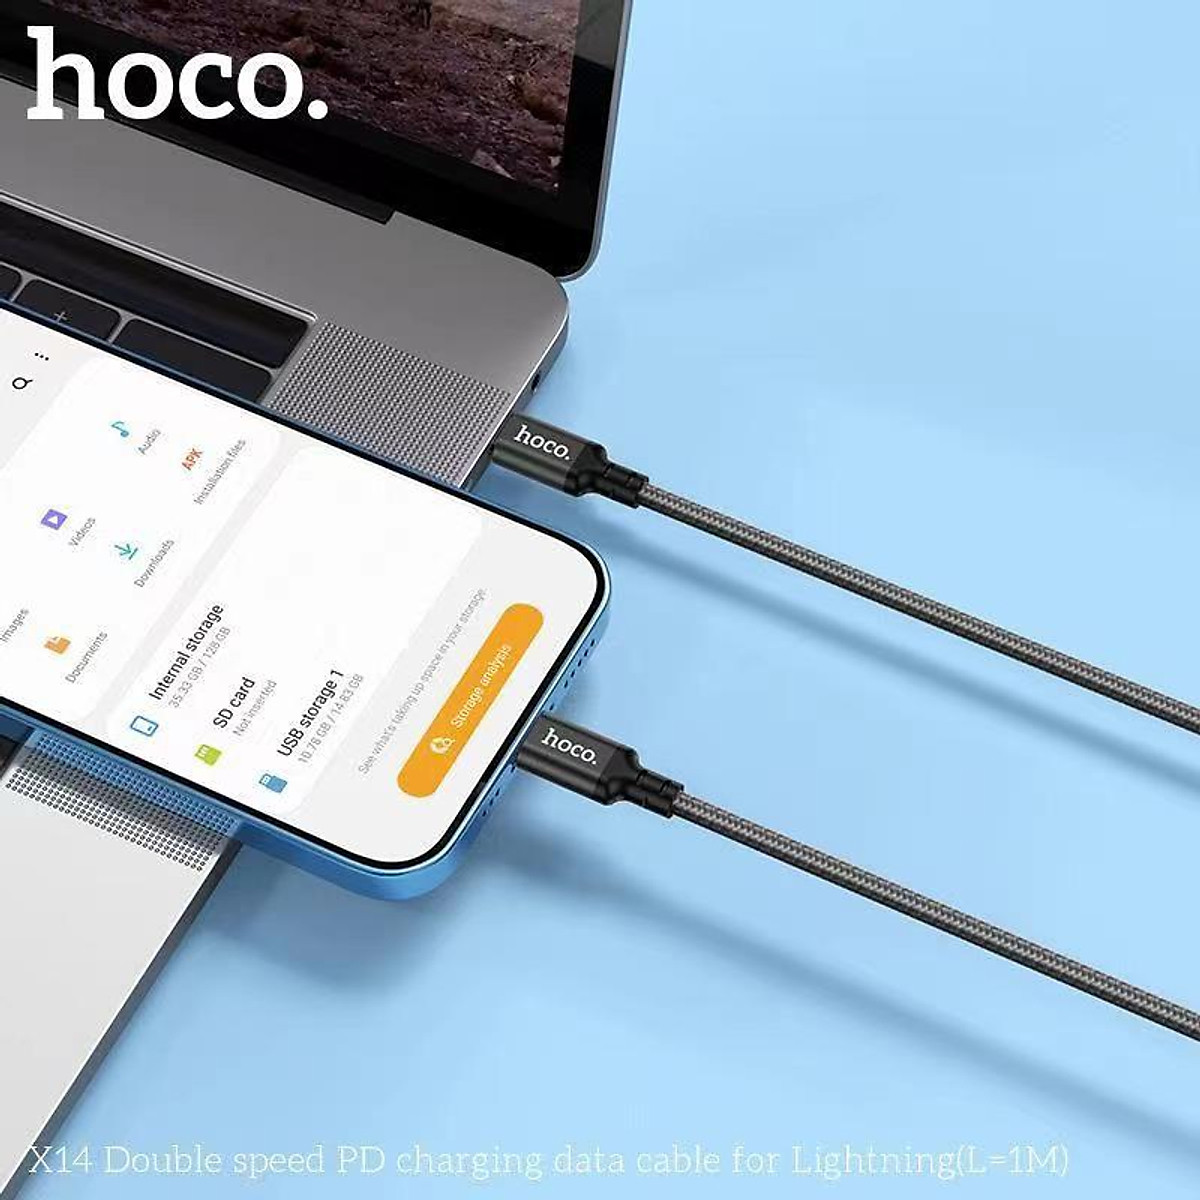 Cáp sạc nhanh 20W 1 mét HOCO X14 (c-l 1m) (Type C ra iPhone Lightning) PD dây dù chính hãng [BH 1 năm]